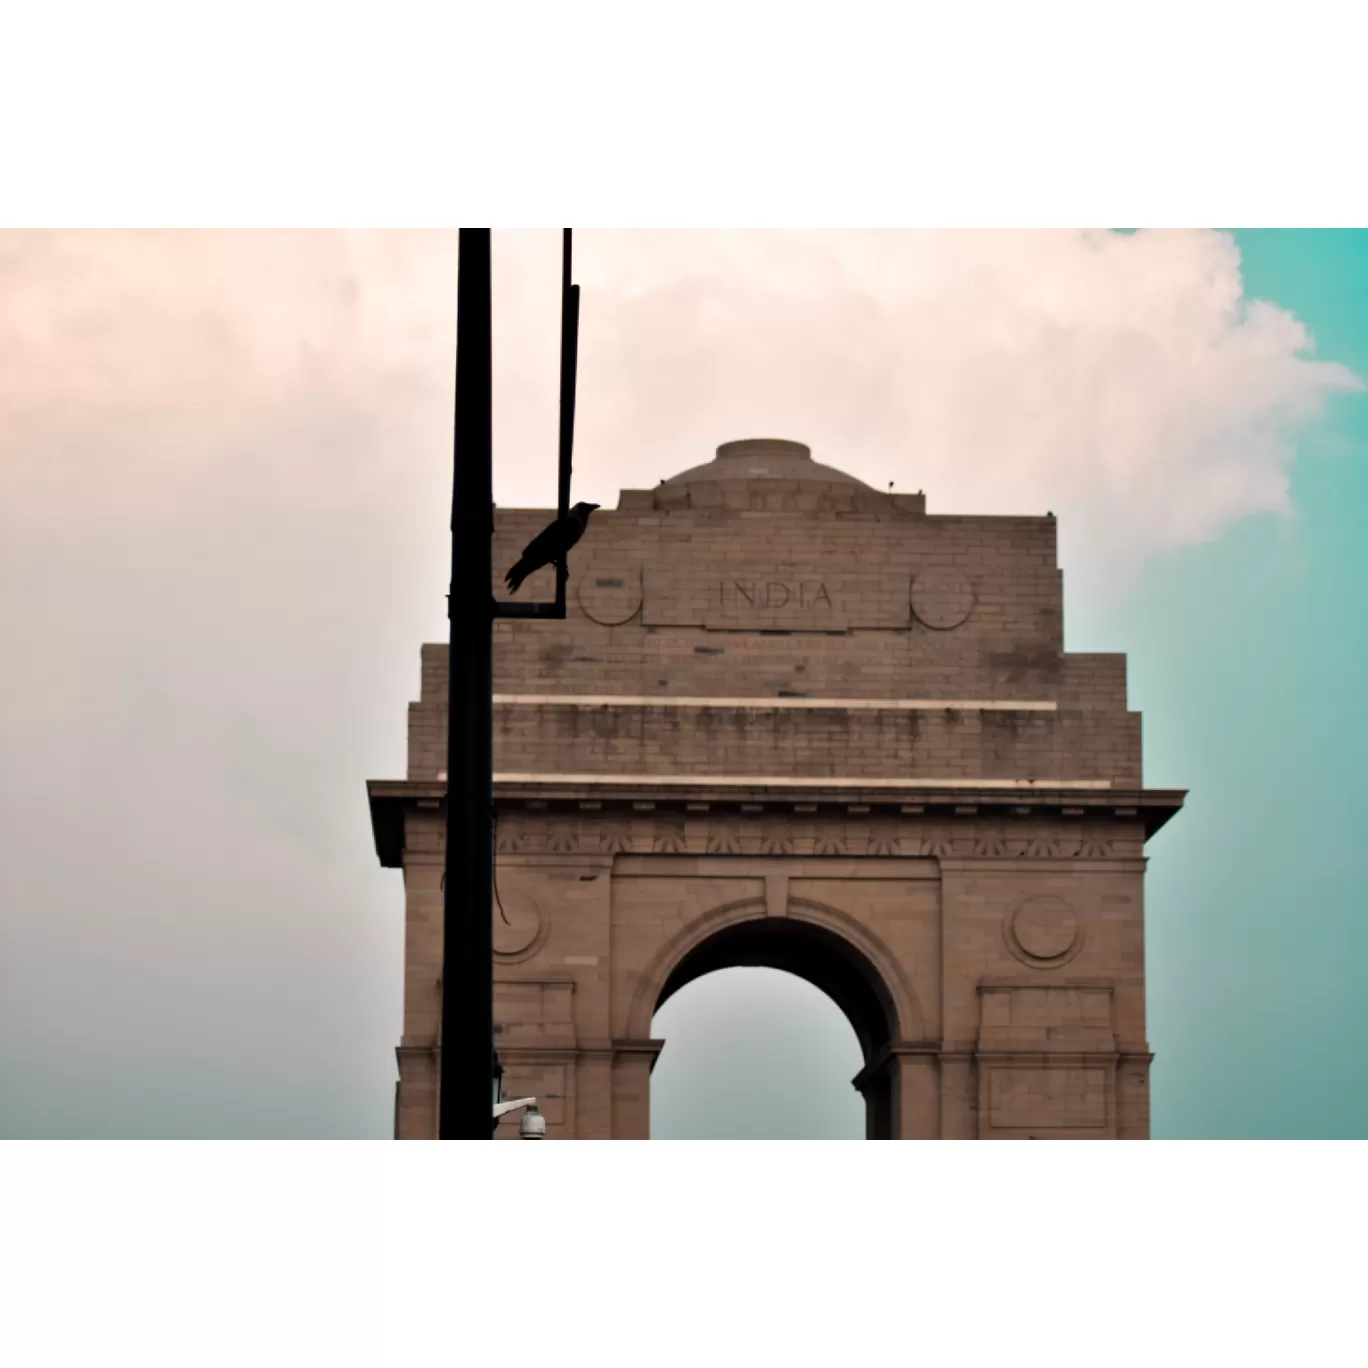 Photo of Delhi By Minhaj Khan